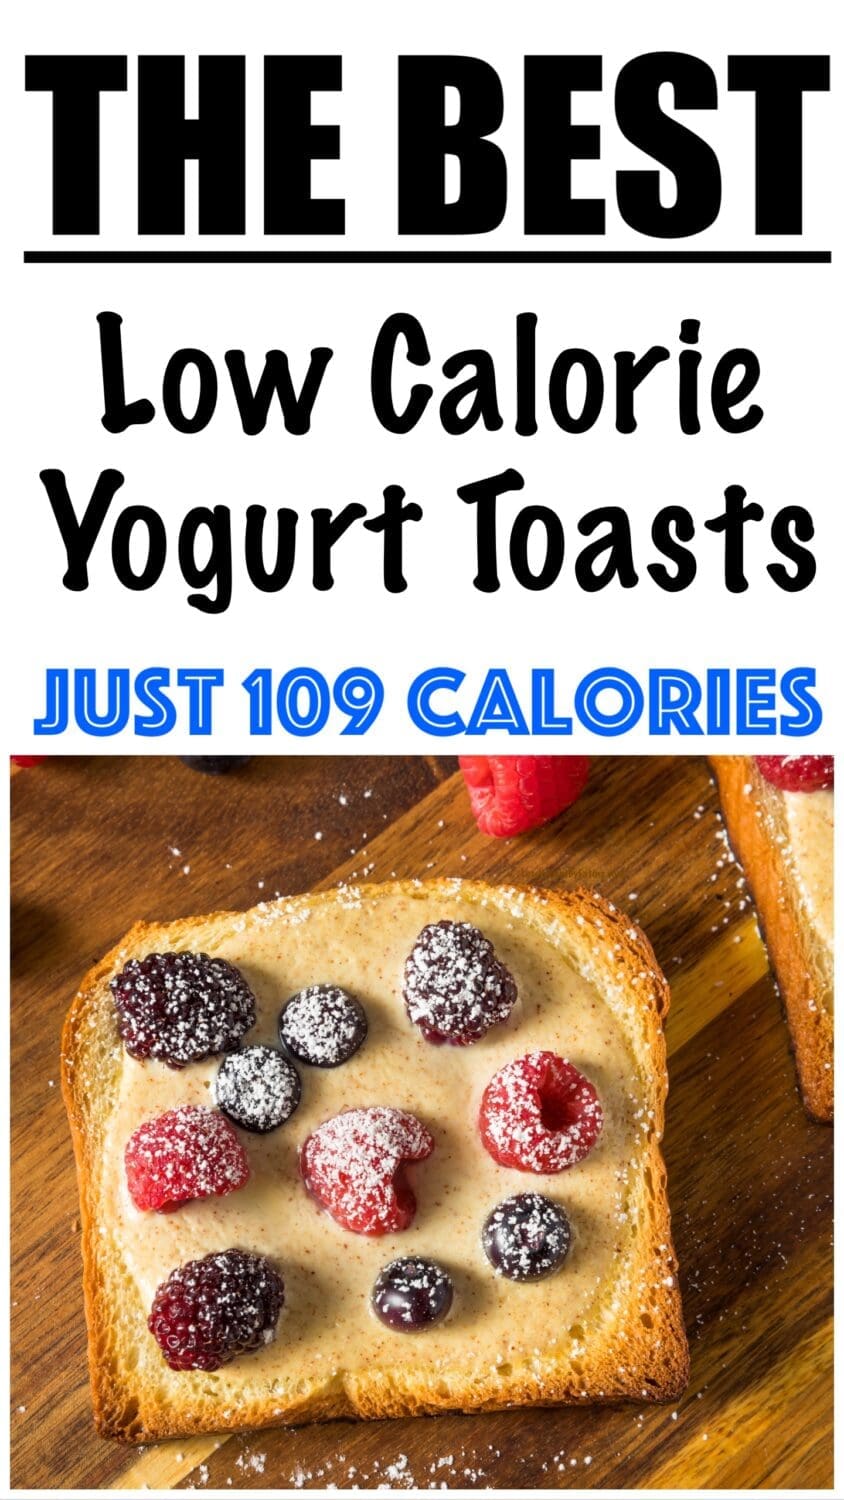 Low Calorie Yogurt Toast Recipe